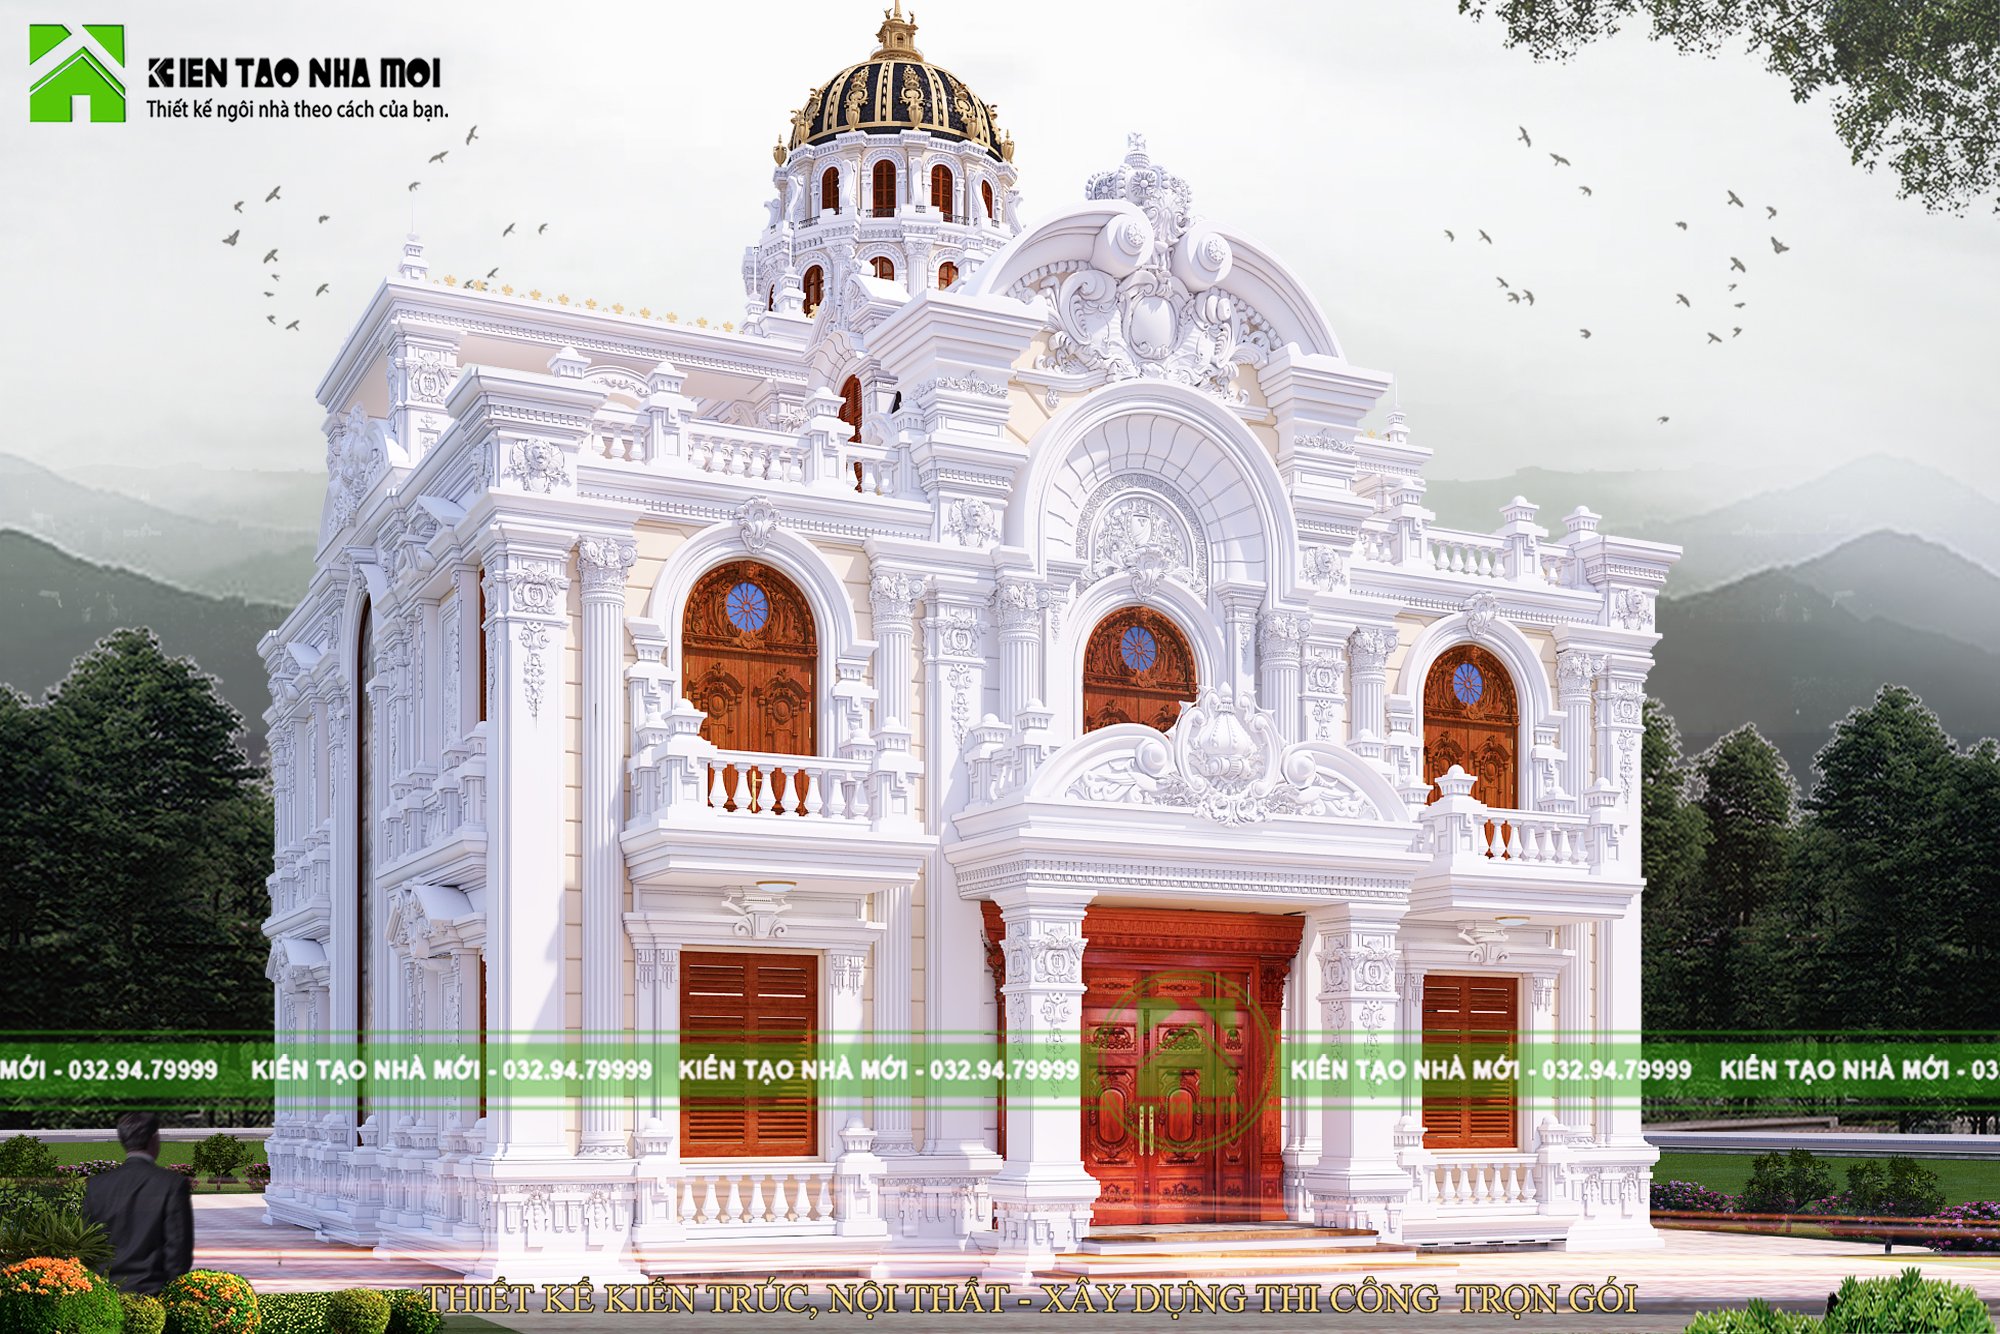 Thiết kế Biệt Thự tại Bắc Ninh Thiết kế lâu đài cổ điển 2 tầng đẳng cấp đẹp 1587266669 1